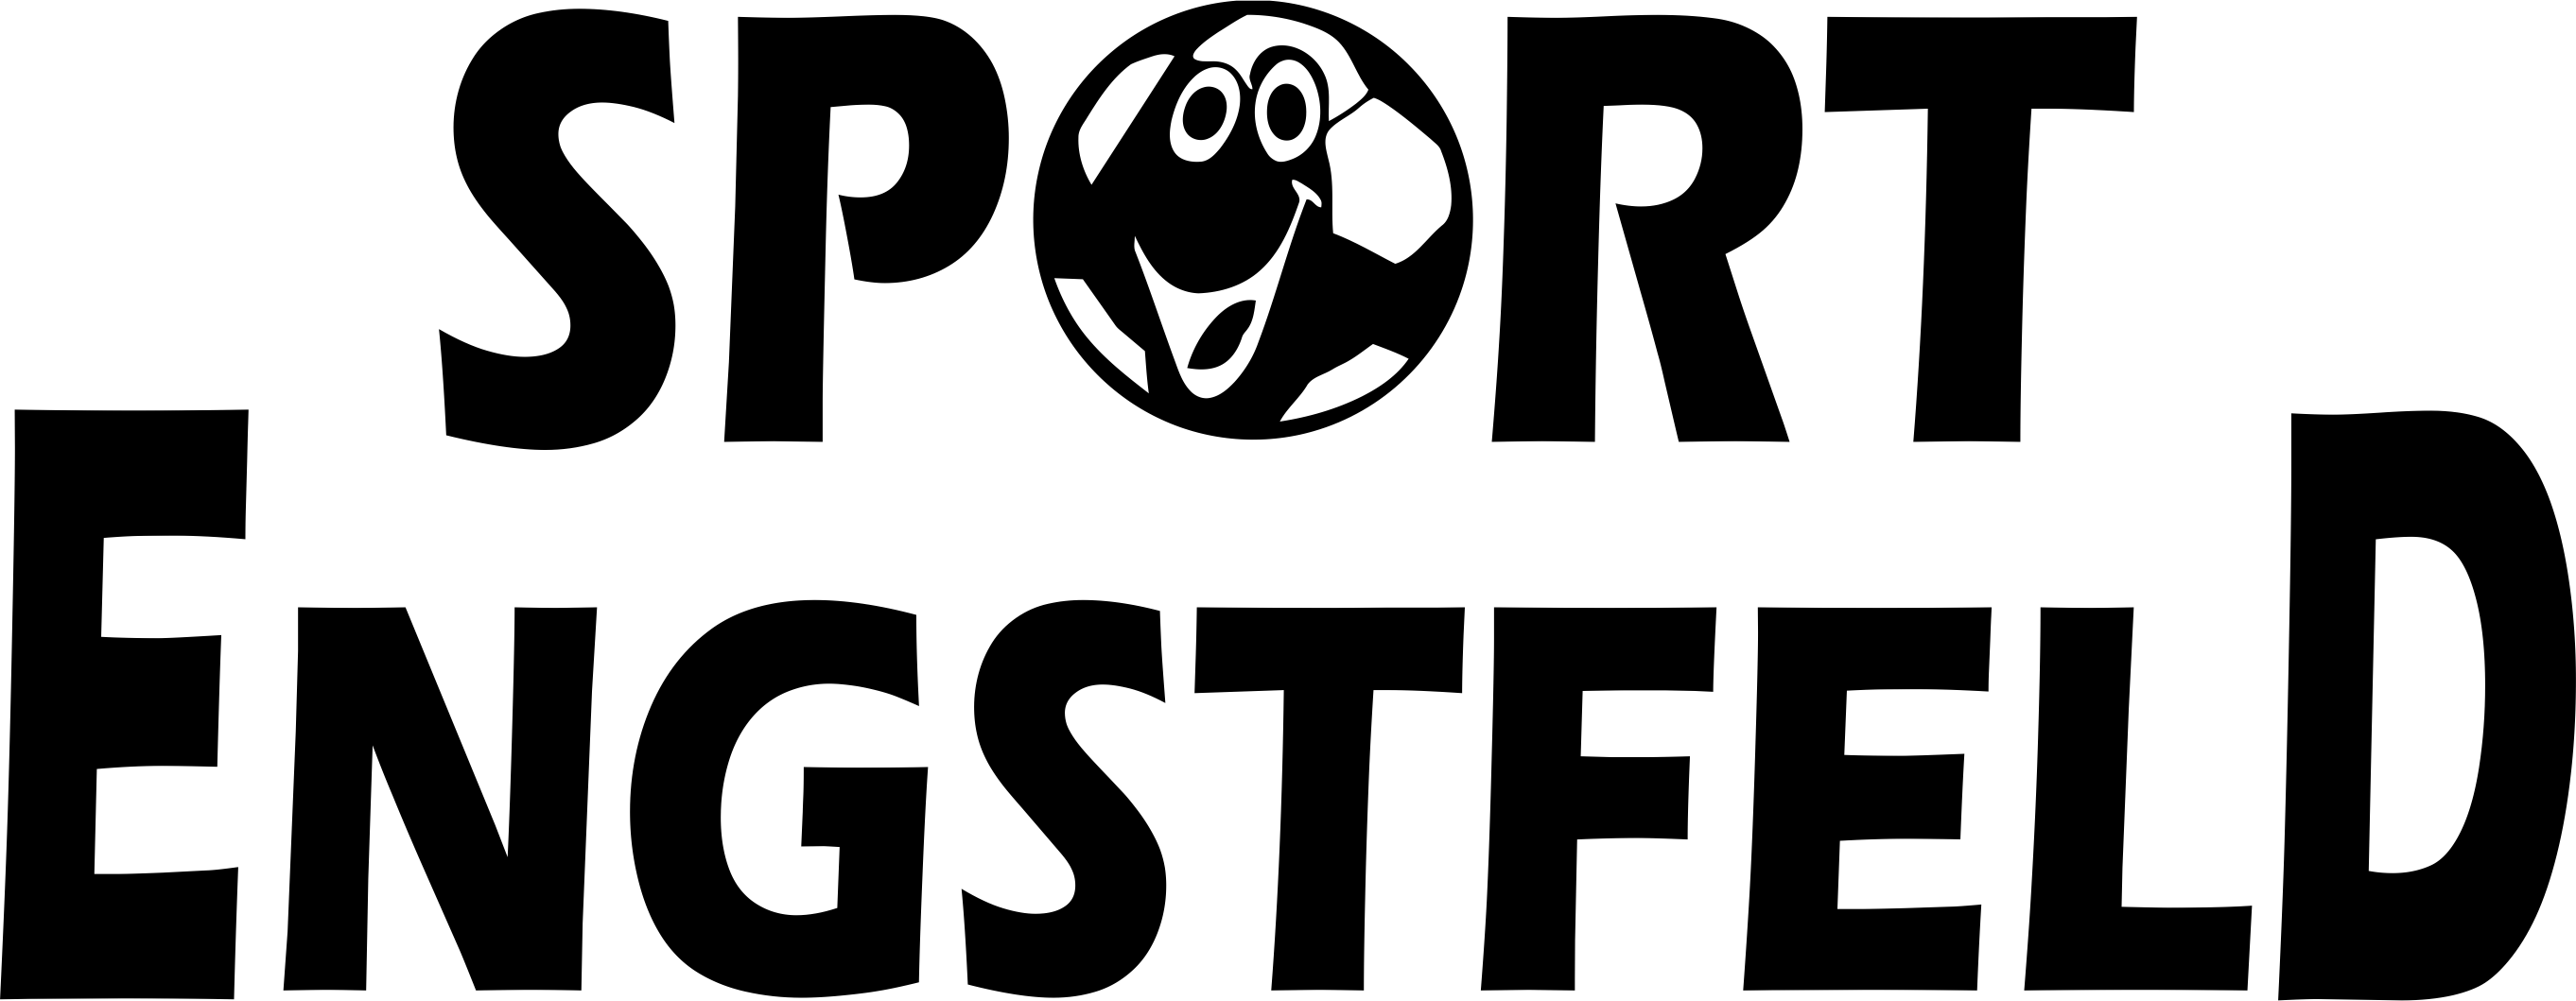 SSV Marienheide Logo 2